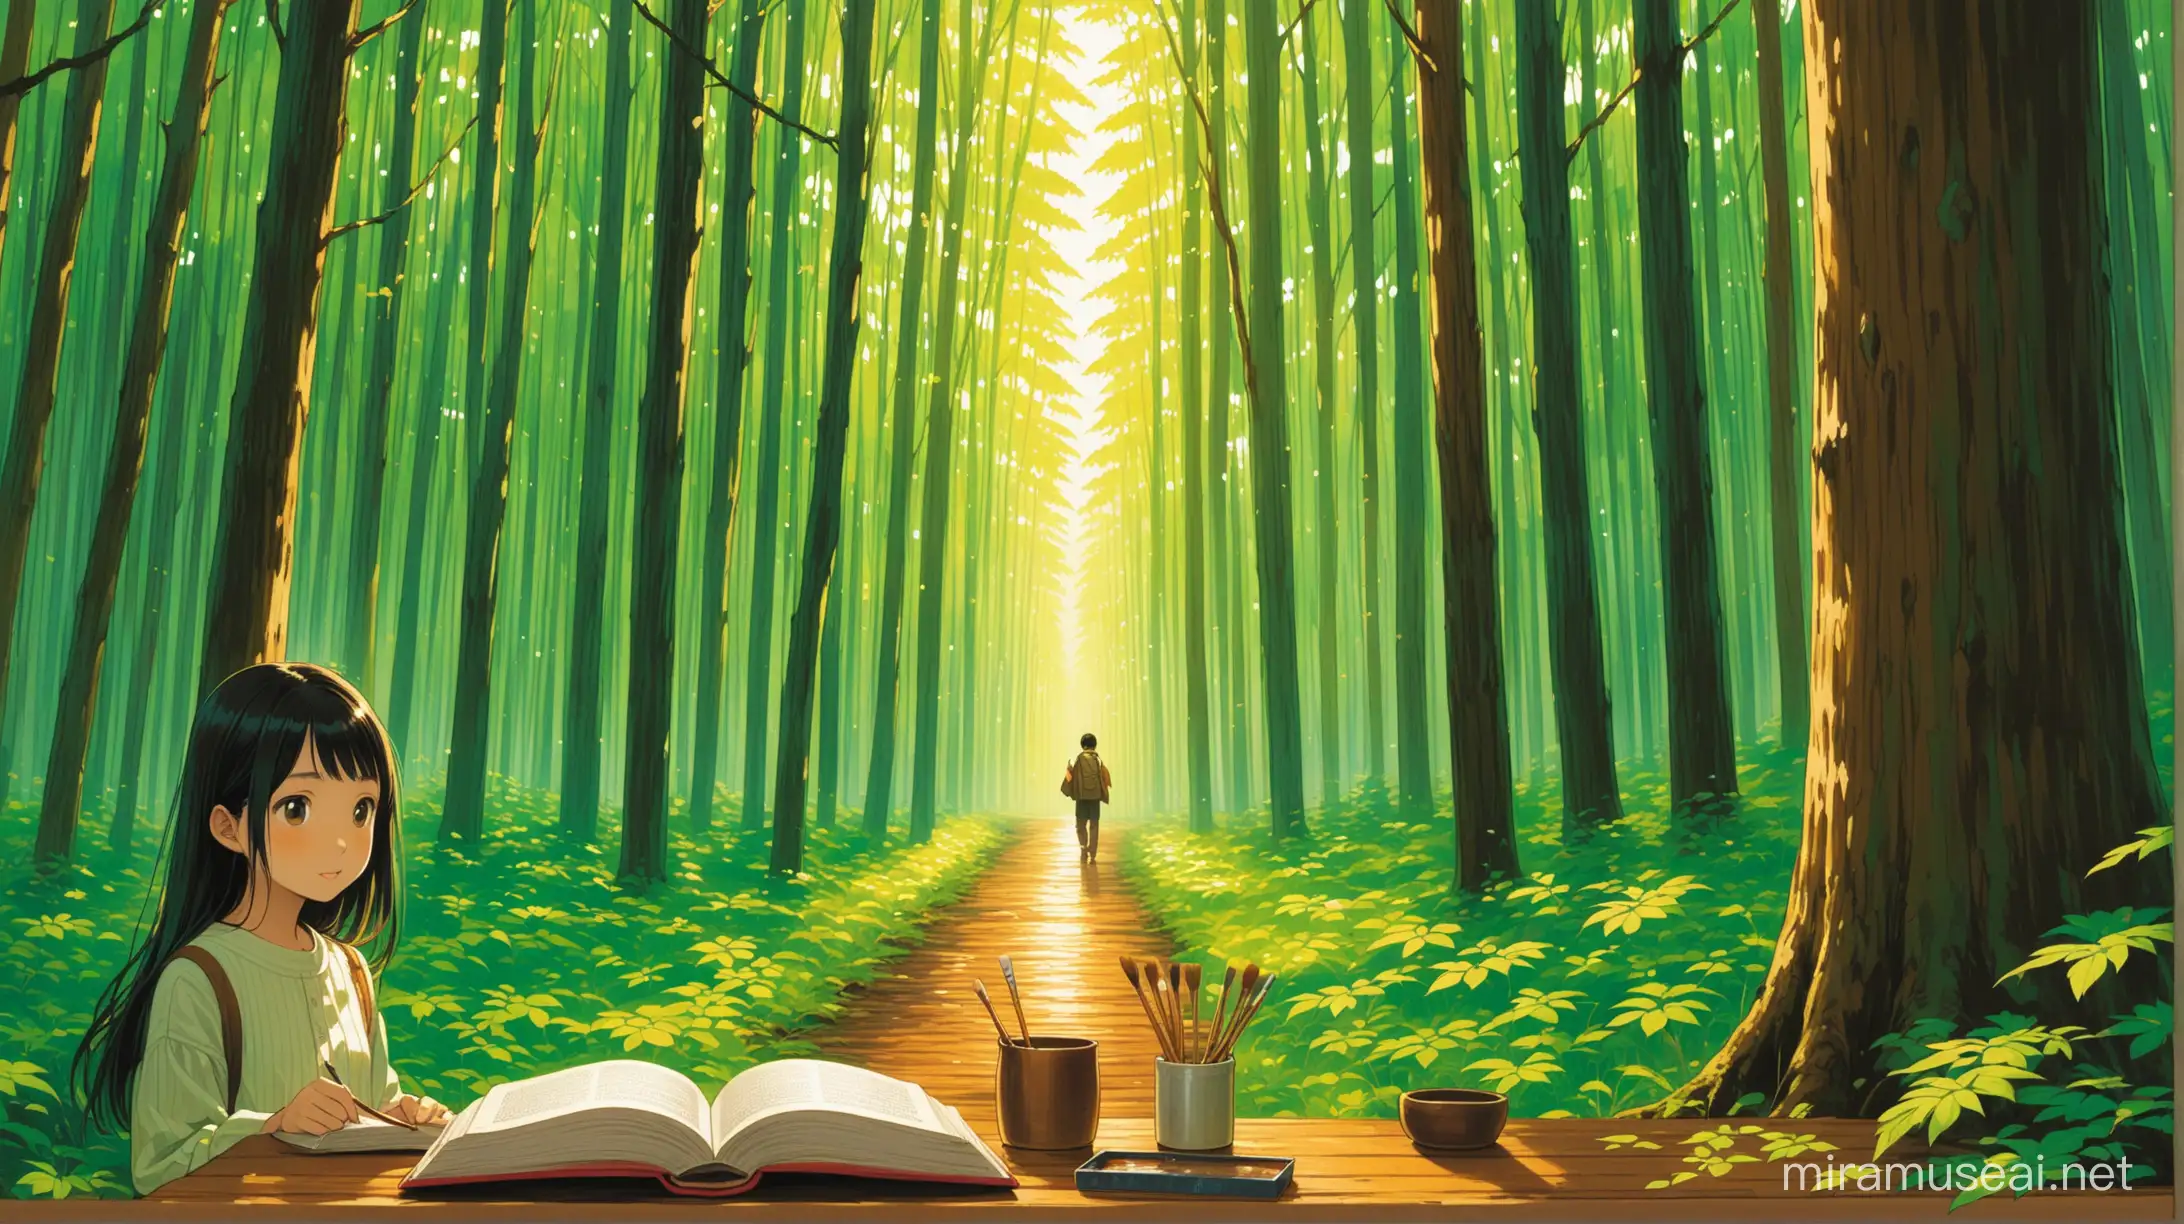 Paint the story of the Norwegian wood book by Haruki Murakami